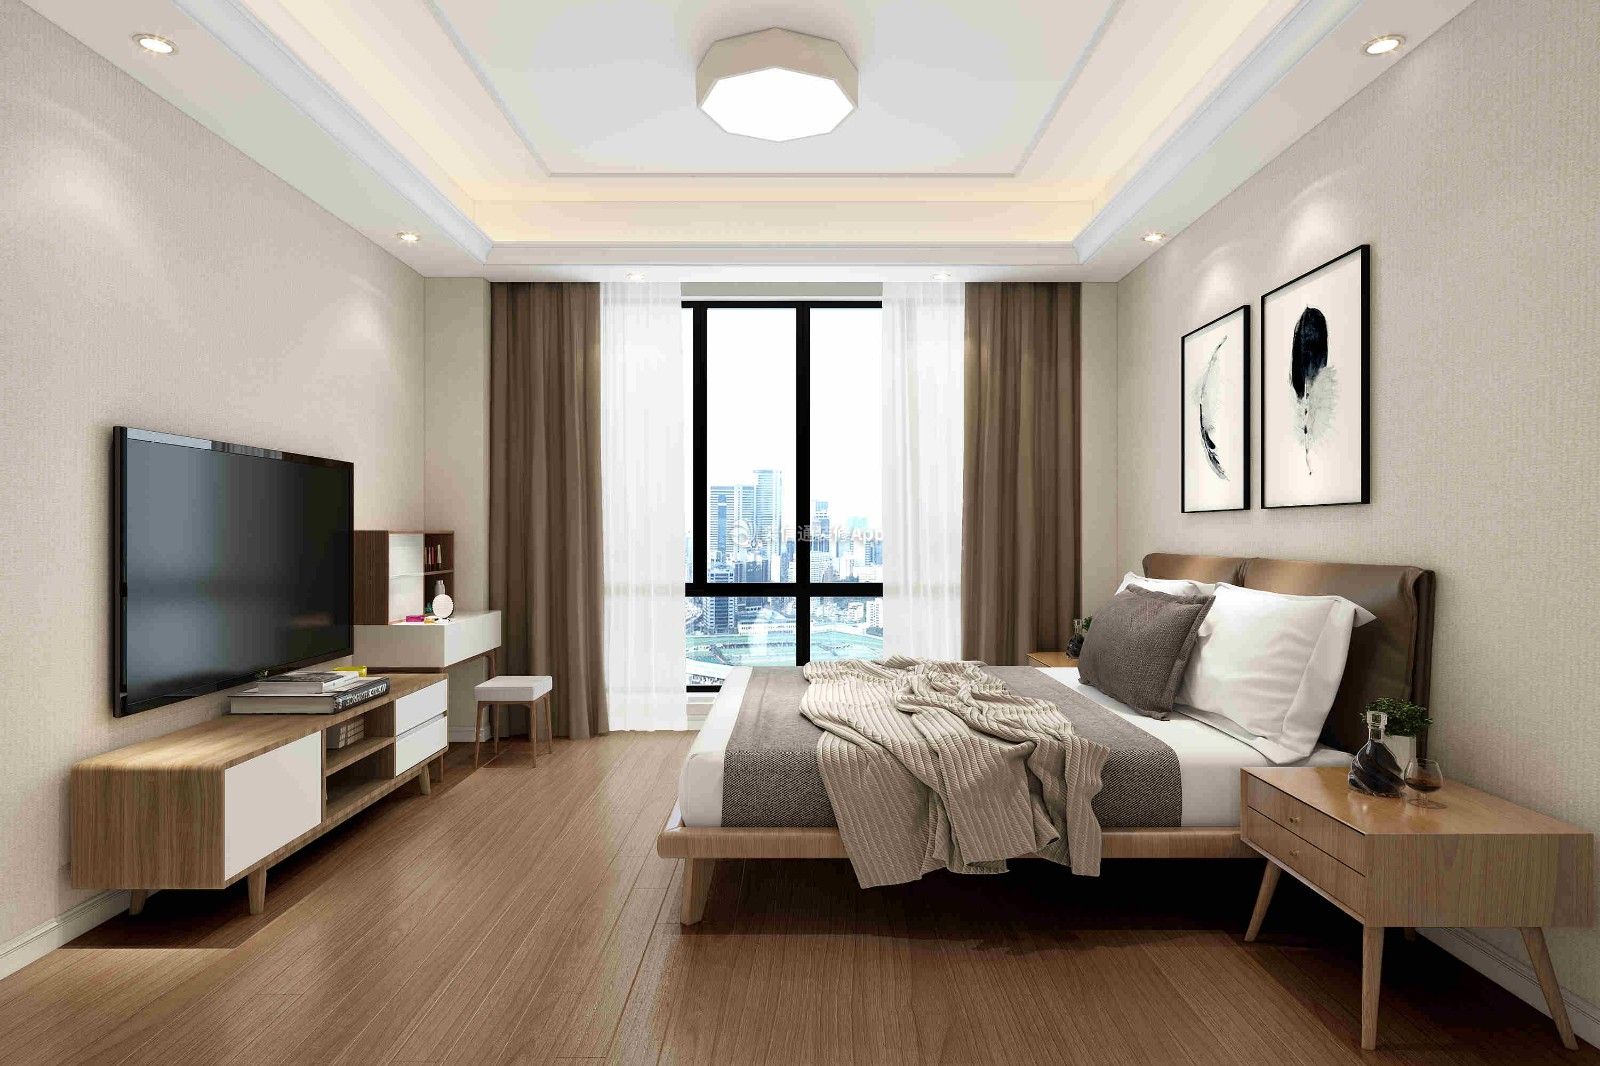 2020卧室电视柜设计图集锦 2020经典现代简约卧室效果图